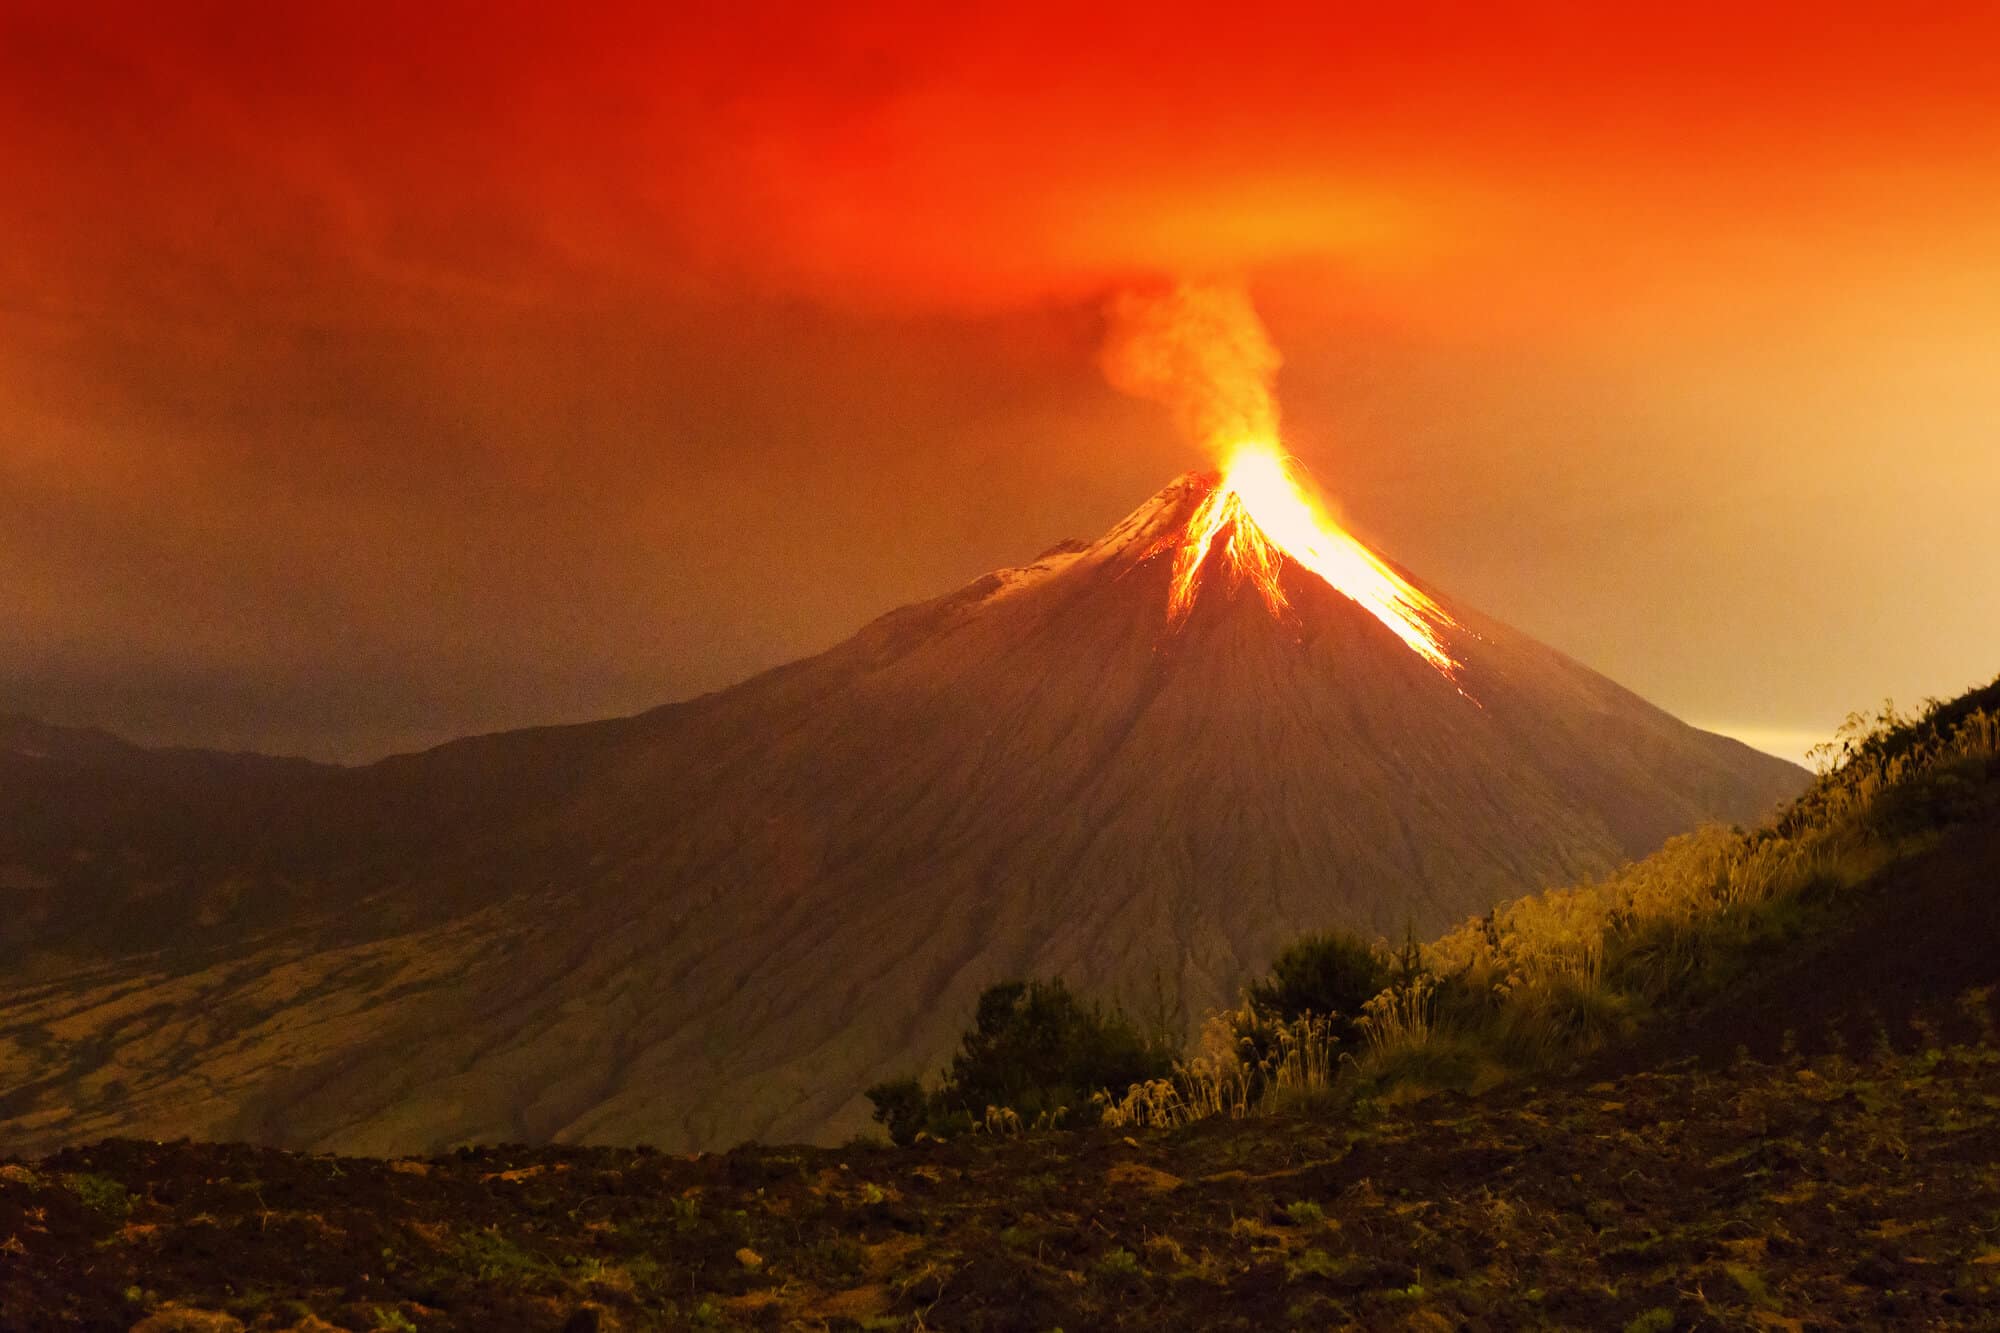 צילום בחשיפה ארוכה של הר הגעש טונגורהואה מתפרץ בלילה של ה-29/22/2011. <a href="https://depositphotos.com. ">המחשה: depositphotos.com</a>